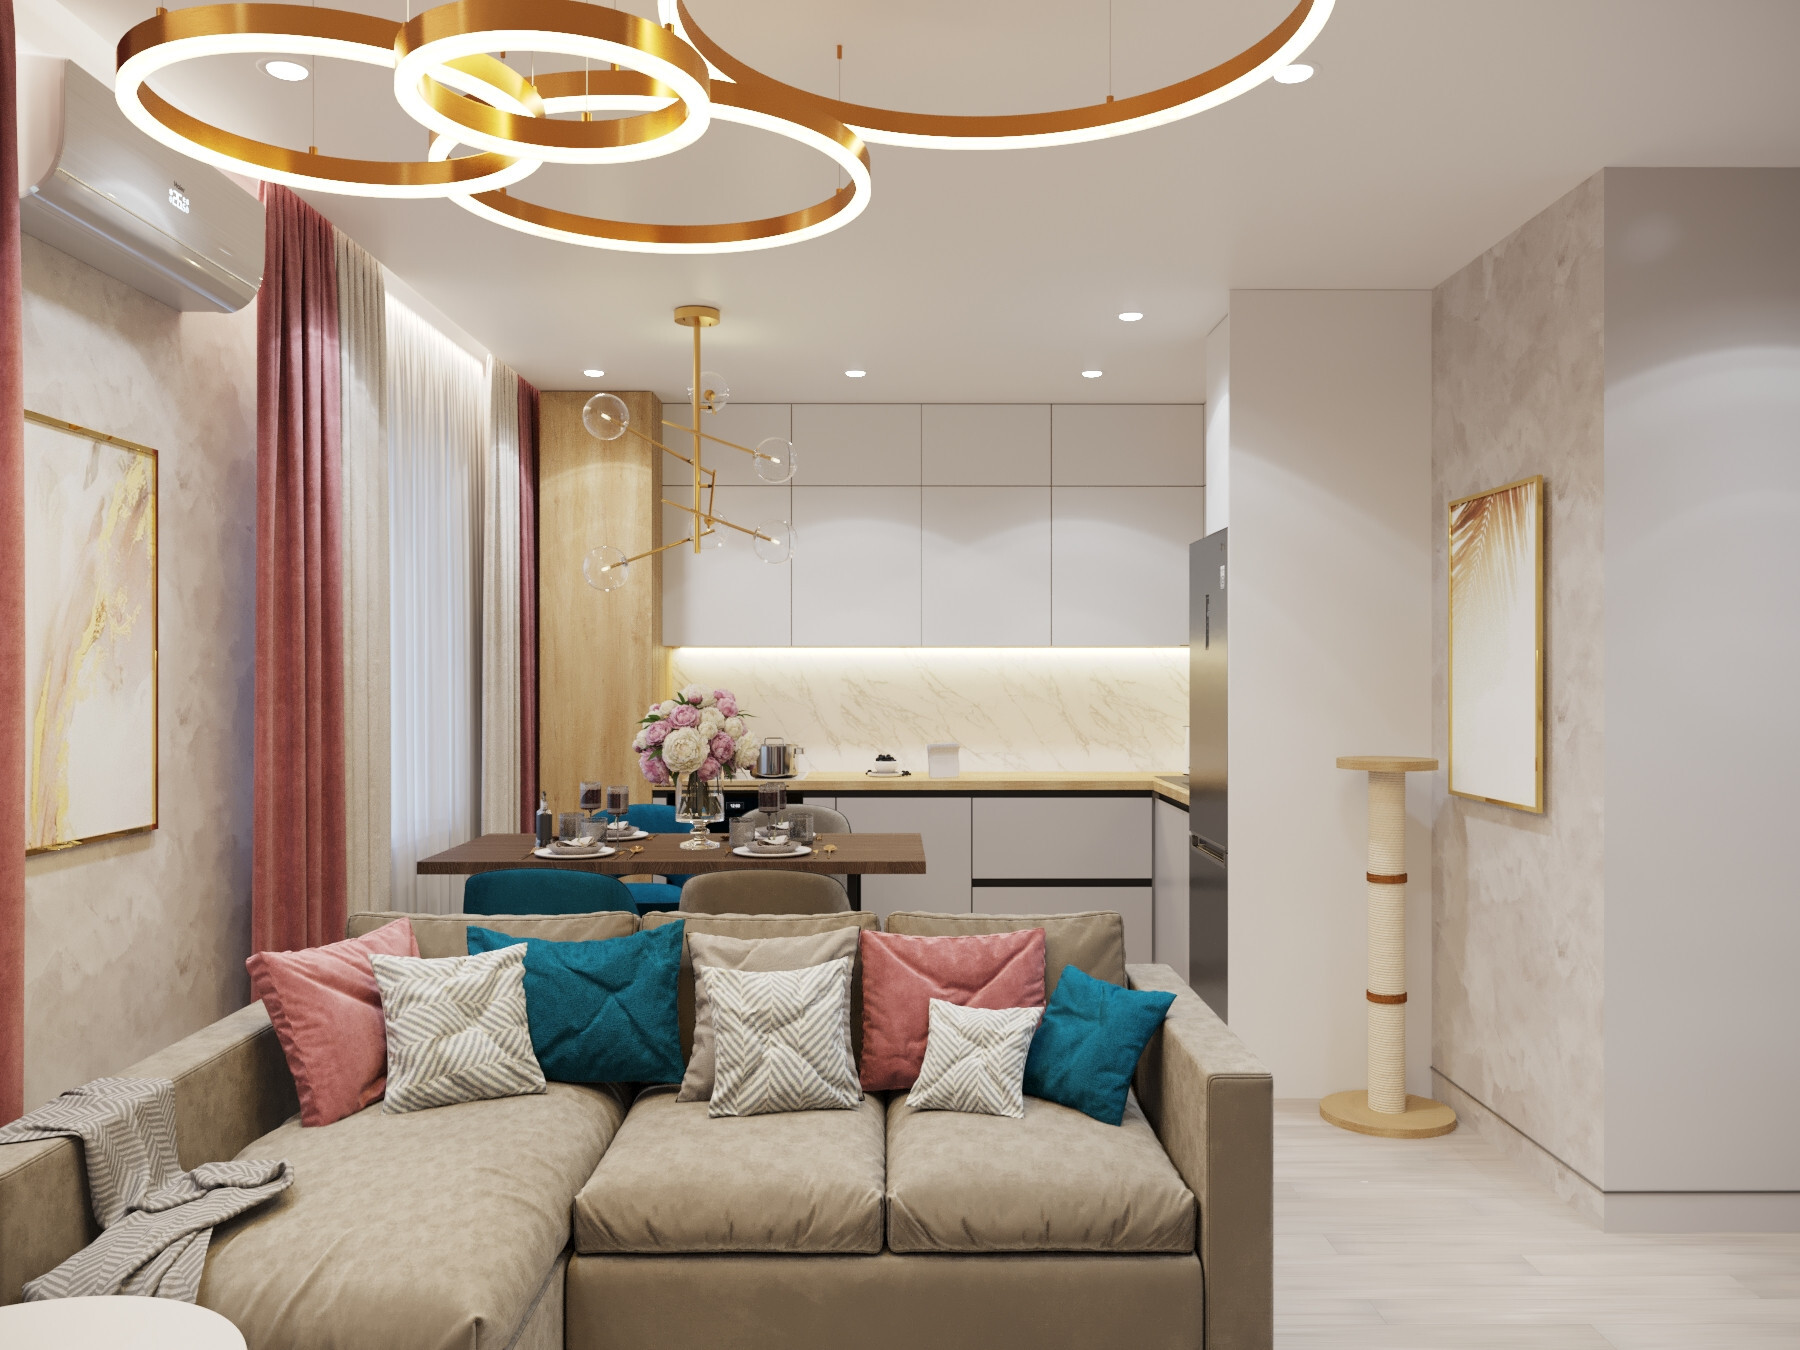 Интерьер гостиной cветовыми линиями и подсветкой светодиодной в современном стиле